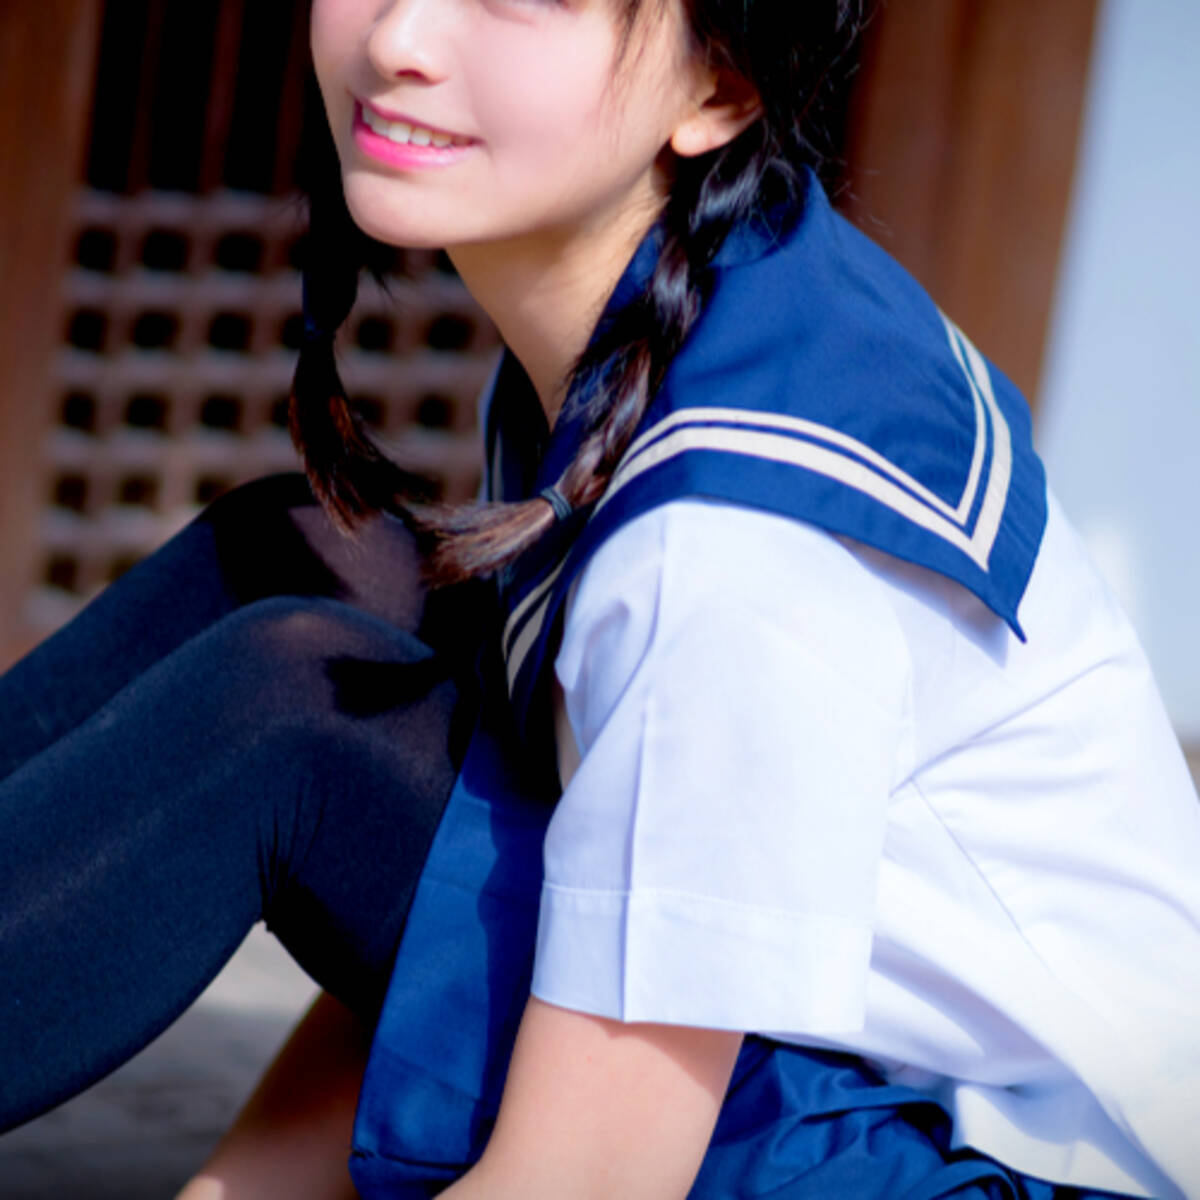 美少女子役 が激変 16歳 谷花音の近影に視聴者驚き 別人みたい 年6月26日 エキサイトニュース